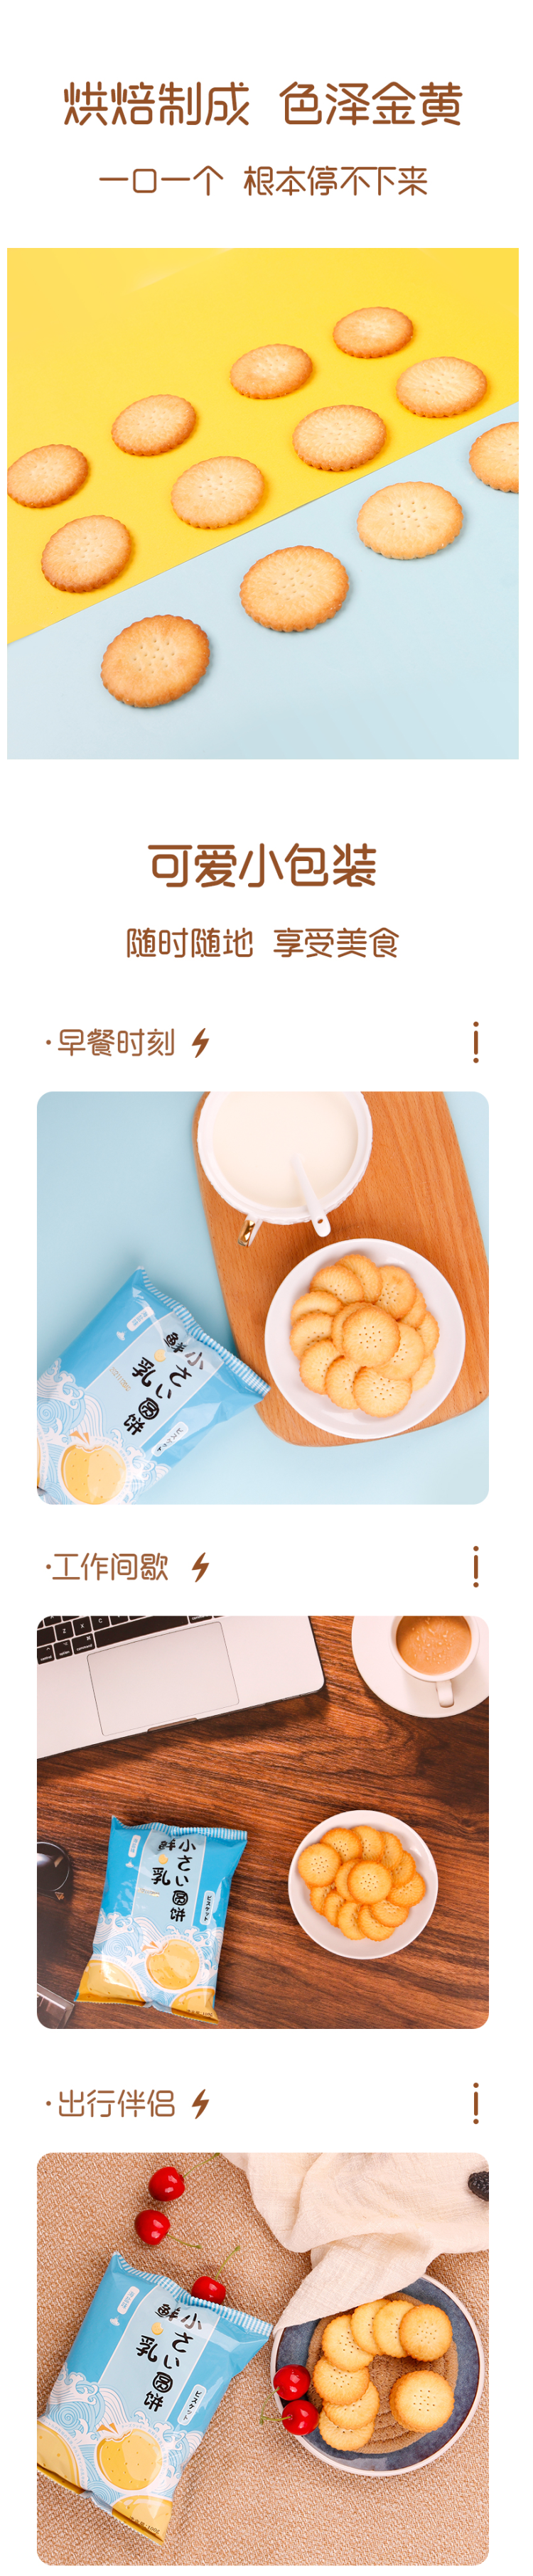 优佳 芝士/海盐味 日式鲜乳小圆饼干 100g*5袋 图2